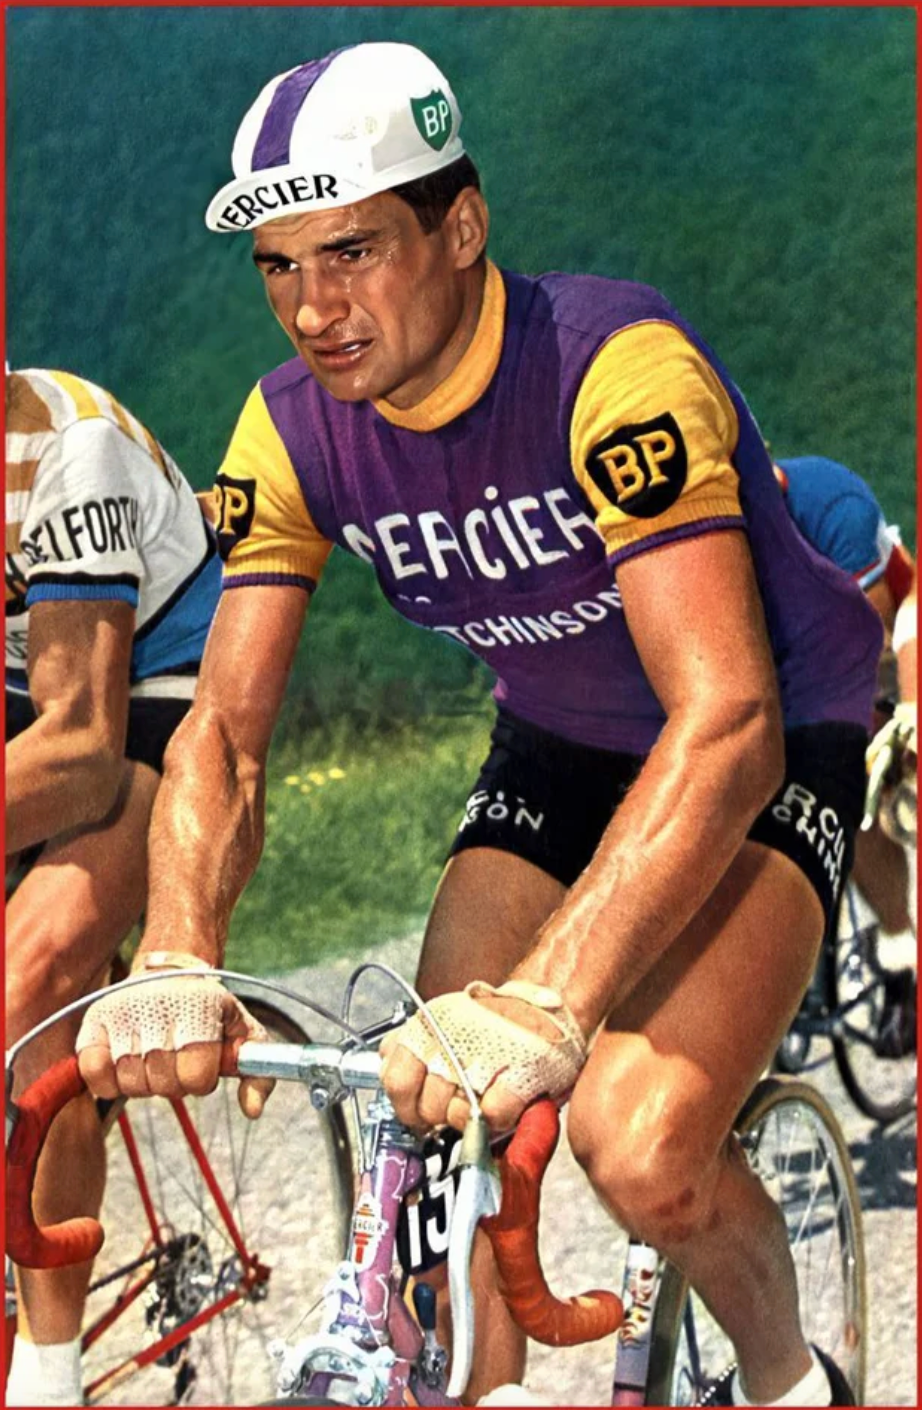 Maillot en Laine Classique Retro Cycling Mercier Hutchinson - Vintage Cycling